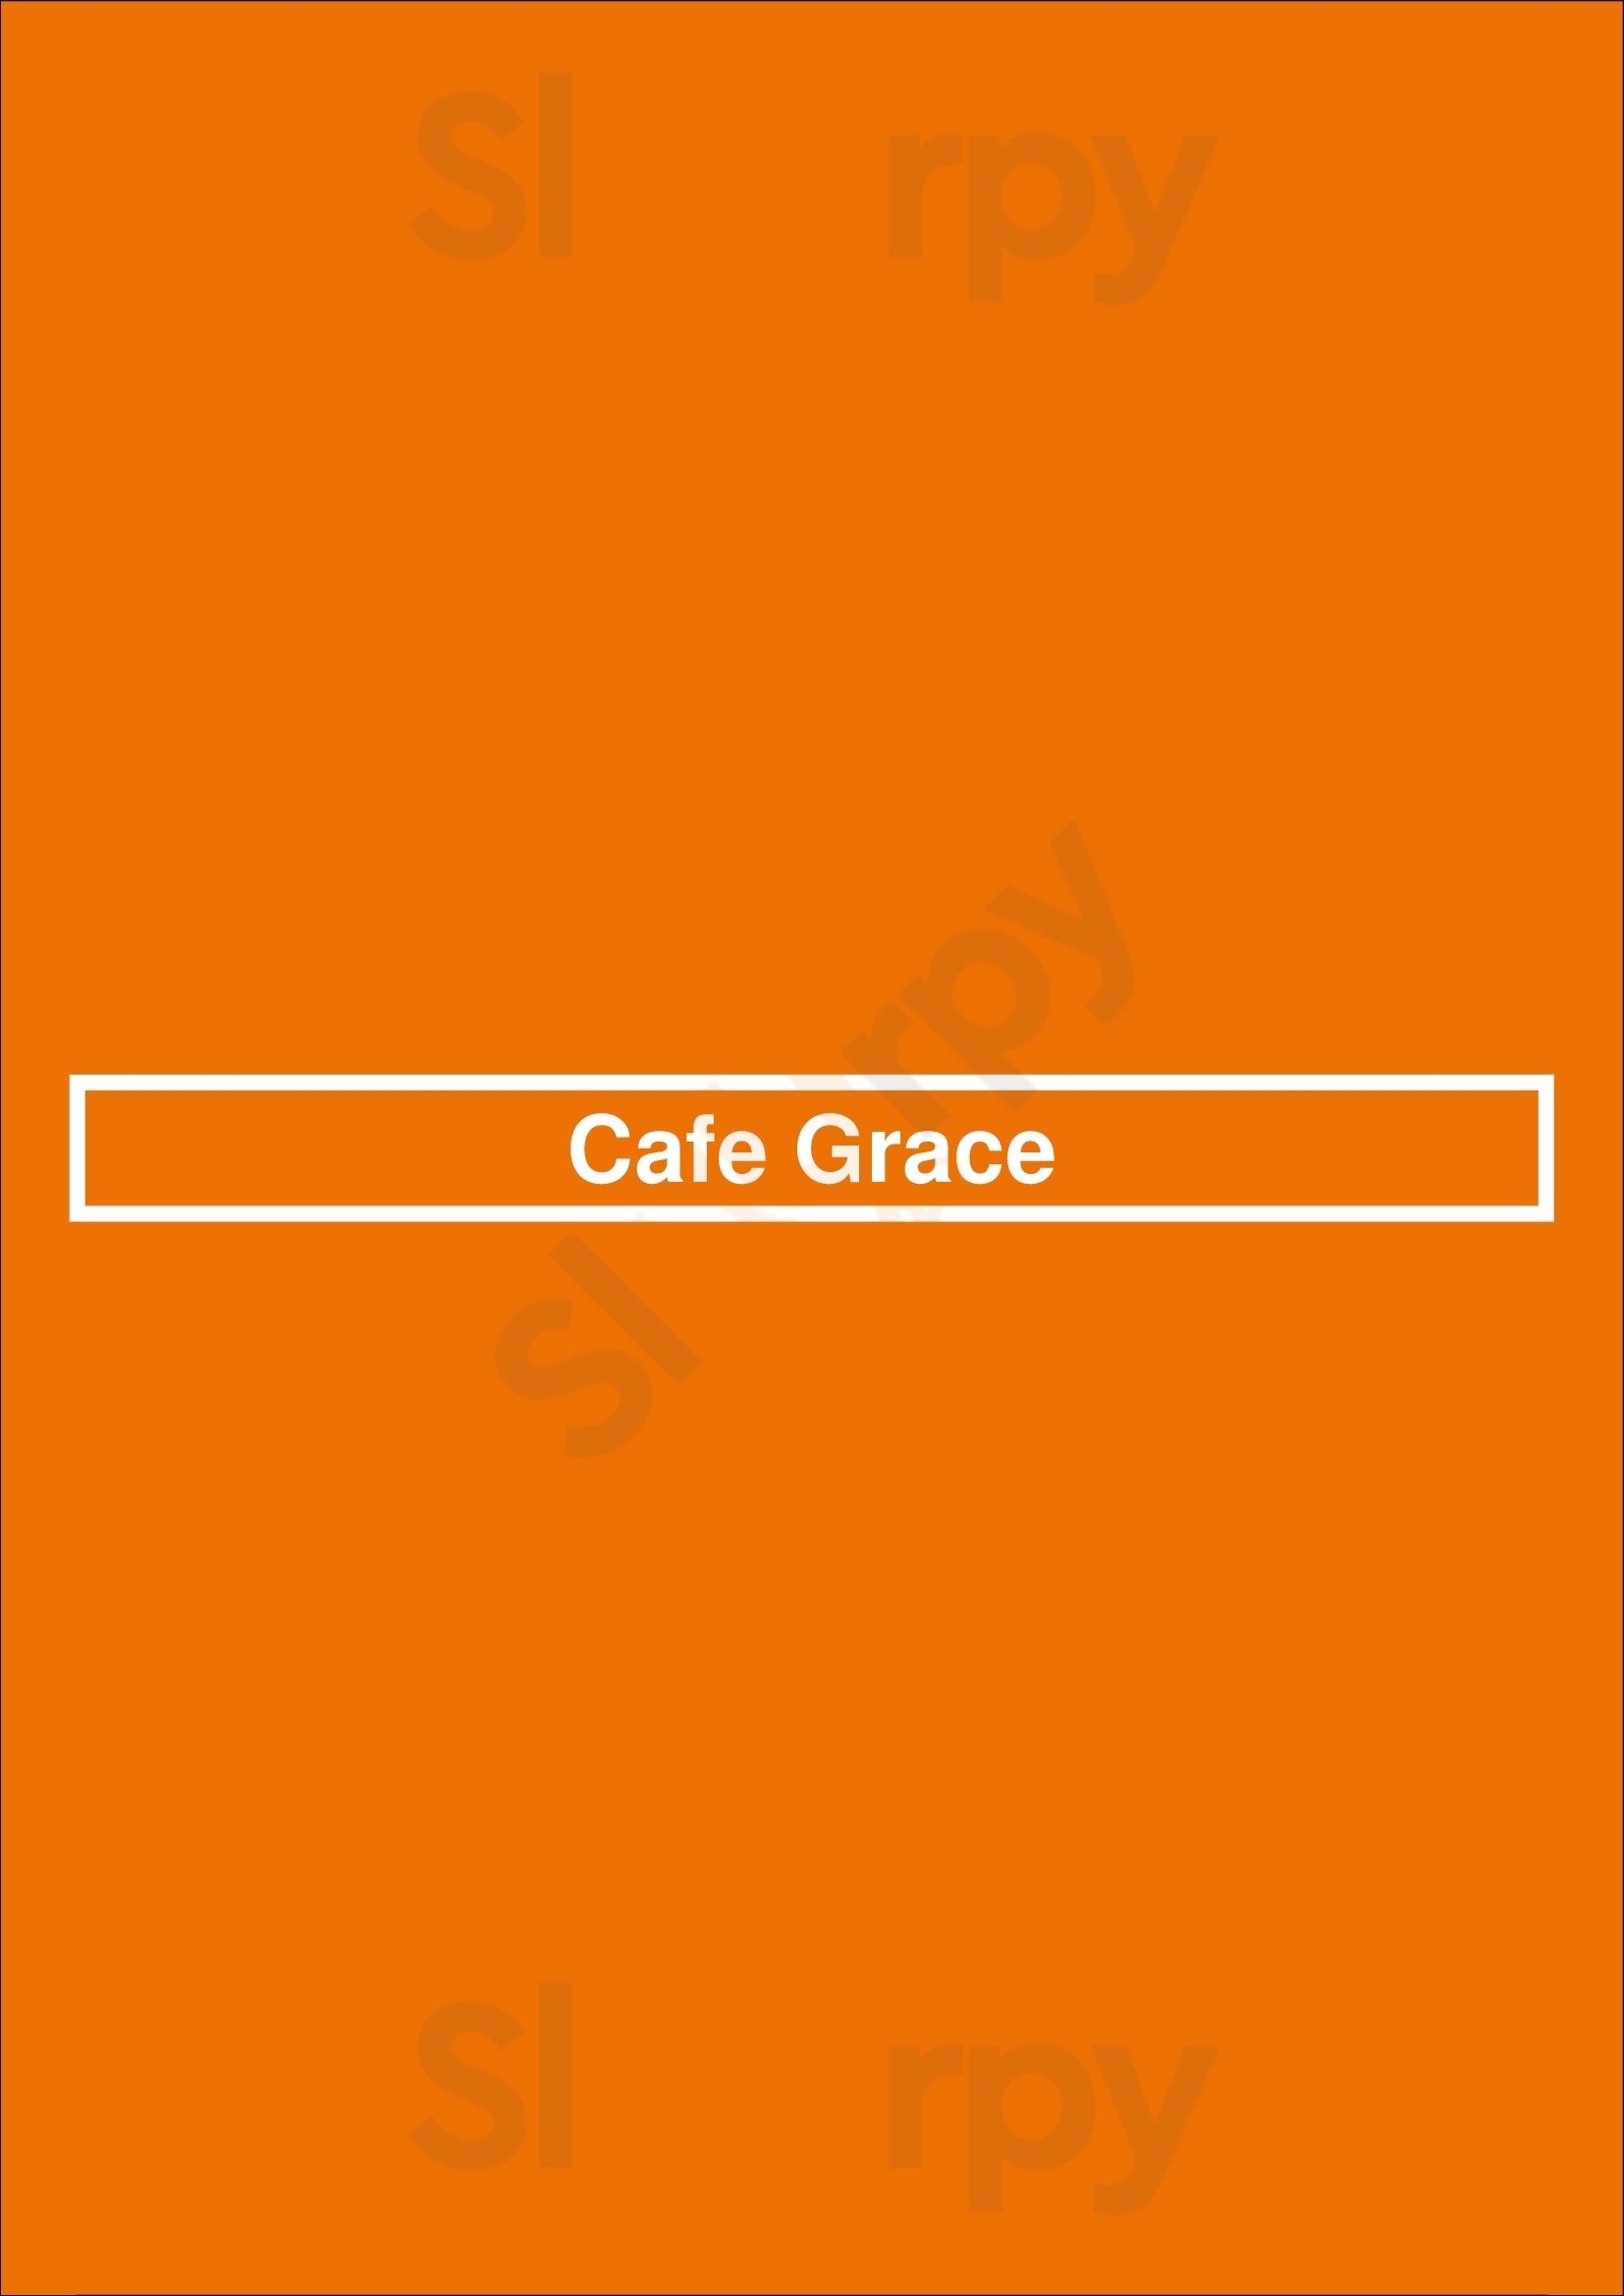 Cafe Grace Wauwatosa Menu - 1